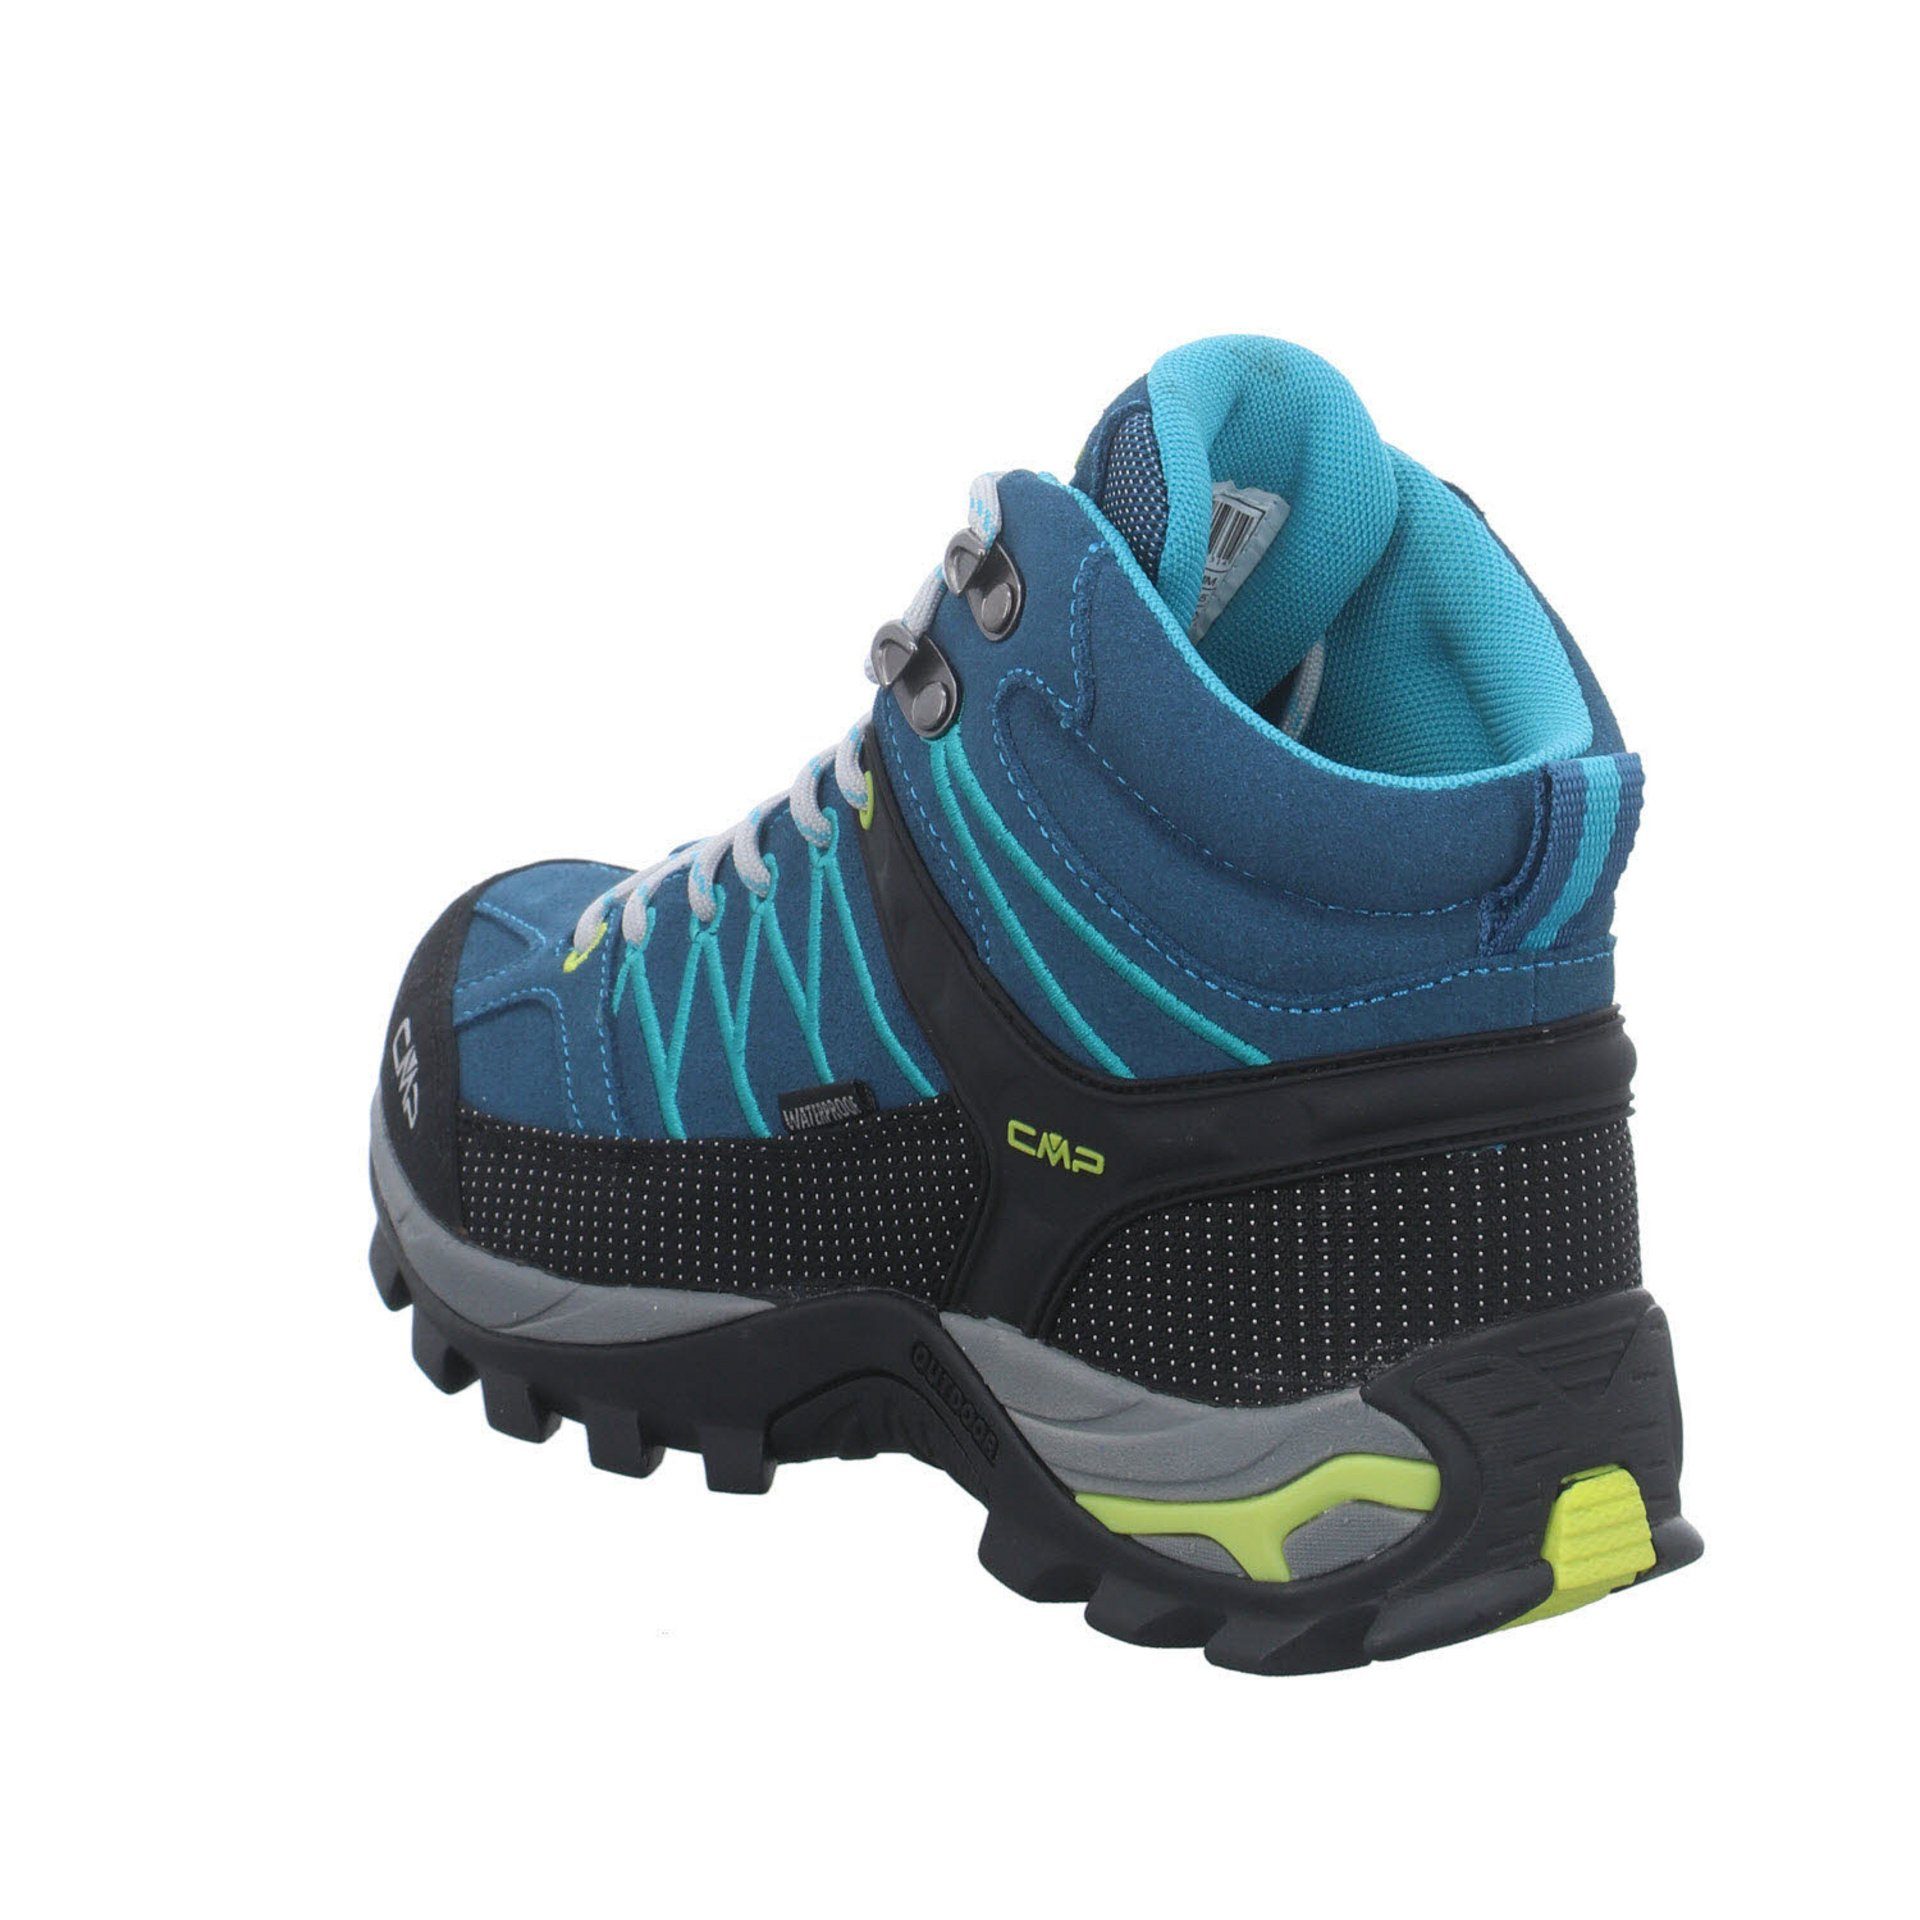 Outdoorschuh Outdoor Schuhe DEEP Damen Mid Leder-/Textilkombination Rigel CMP LAKE-BALTIC Outdoorschuh